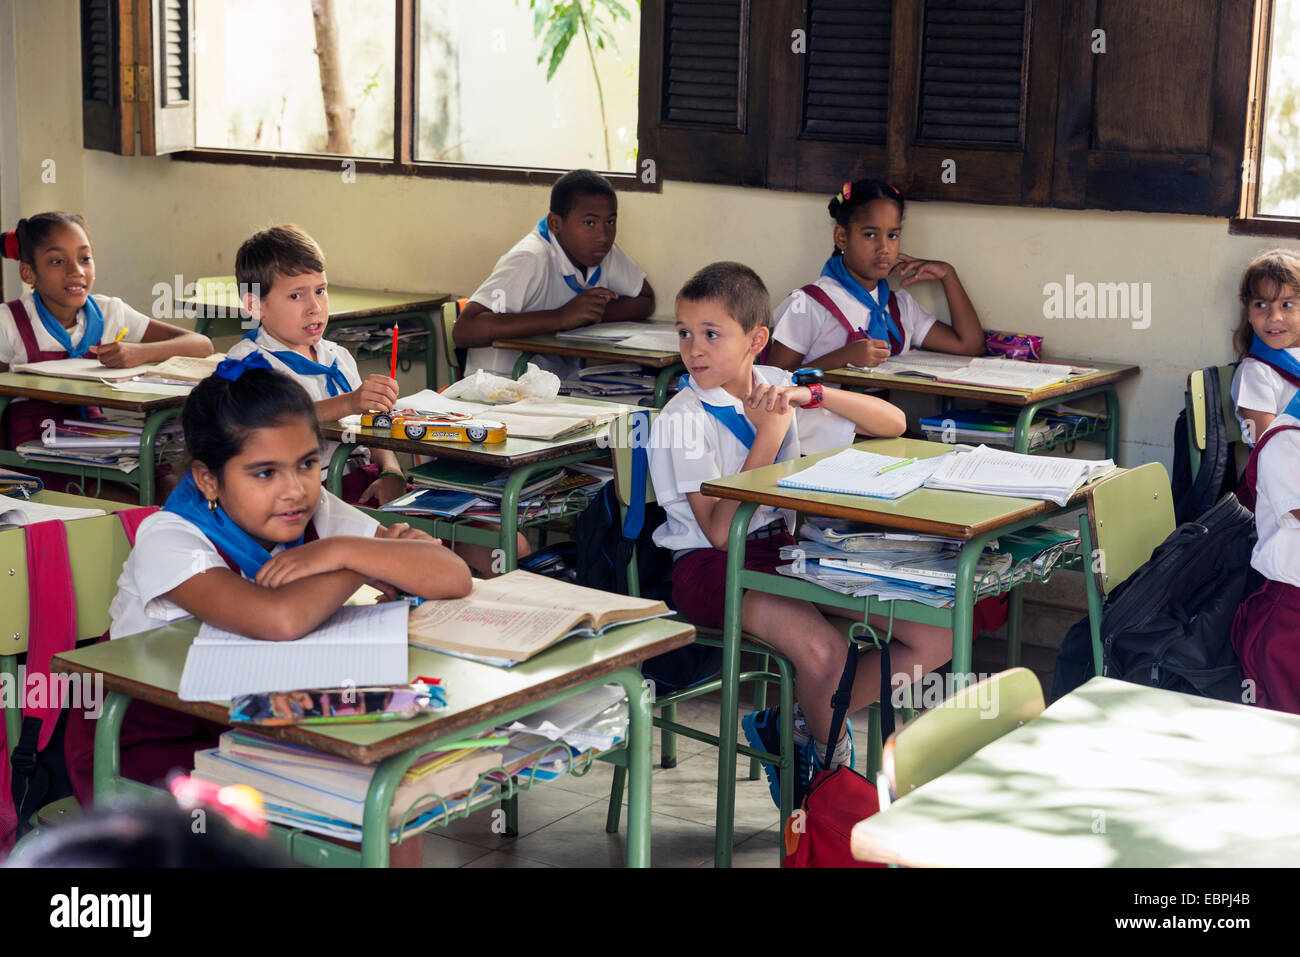 Havanna, Kuba - 5. Mai 2014: Gruppe von kubanischen Schulkinder von Grundschulkind in Uniform sitzt an einem Schulhaus Havan gekleidet Stockfoto